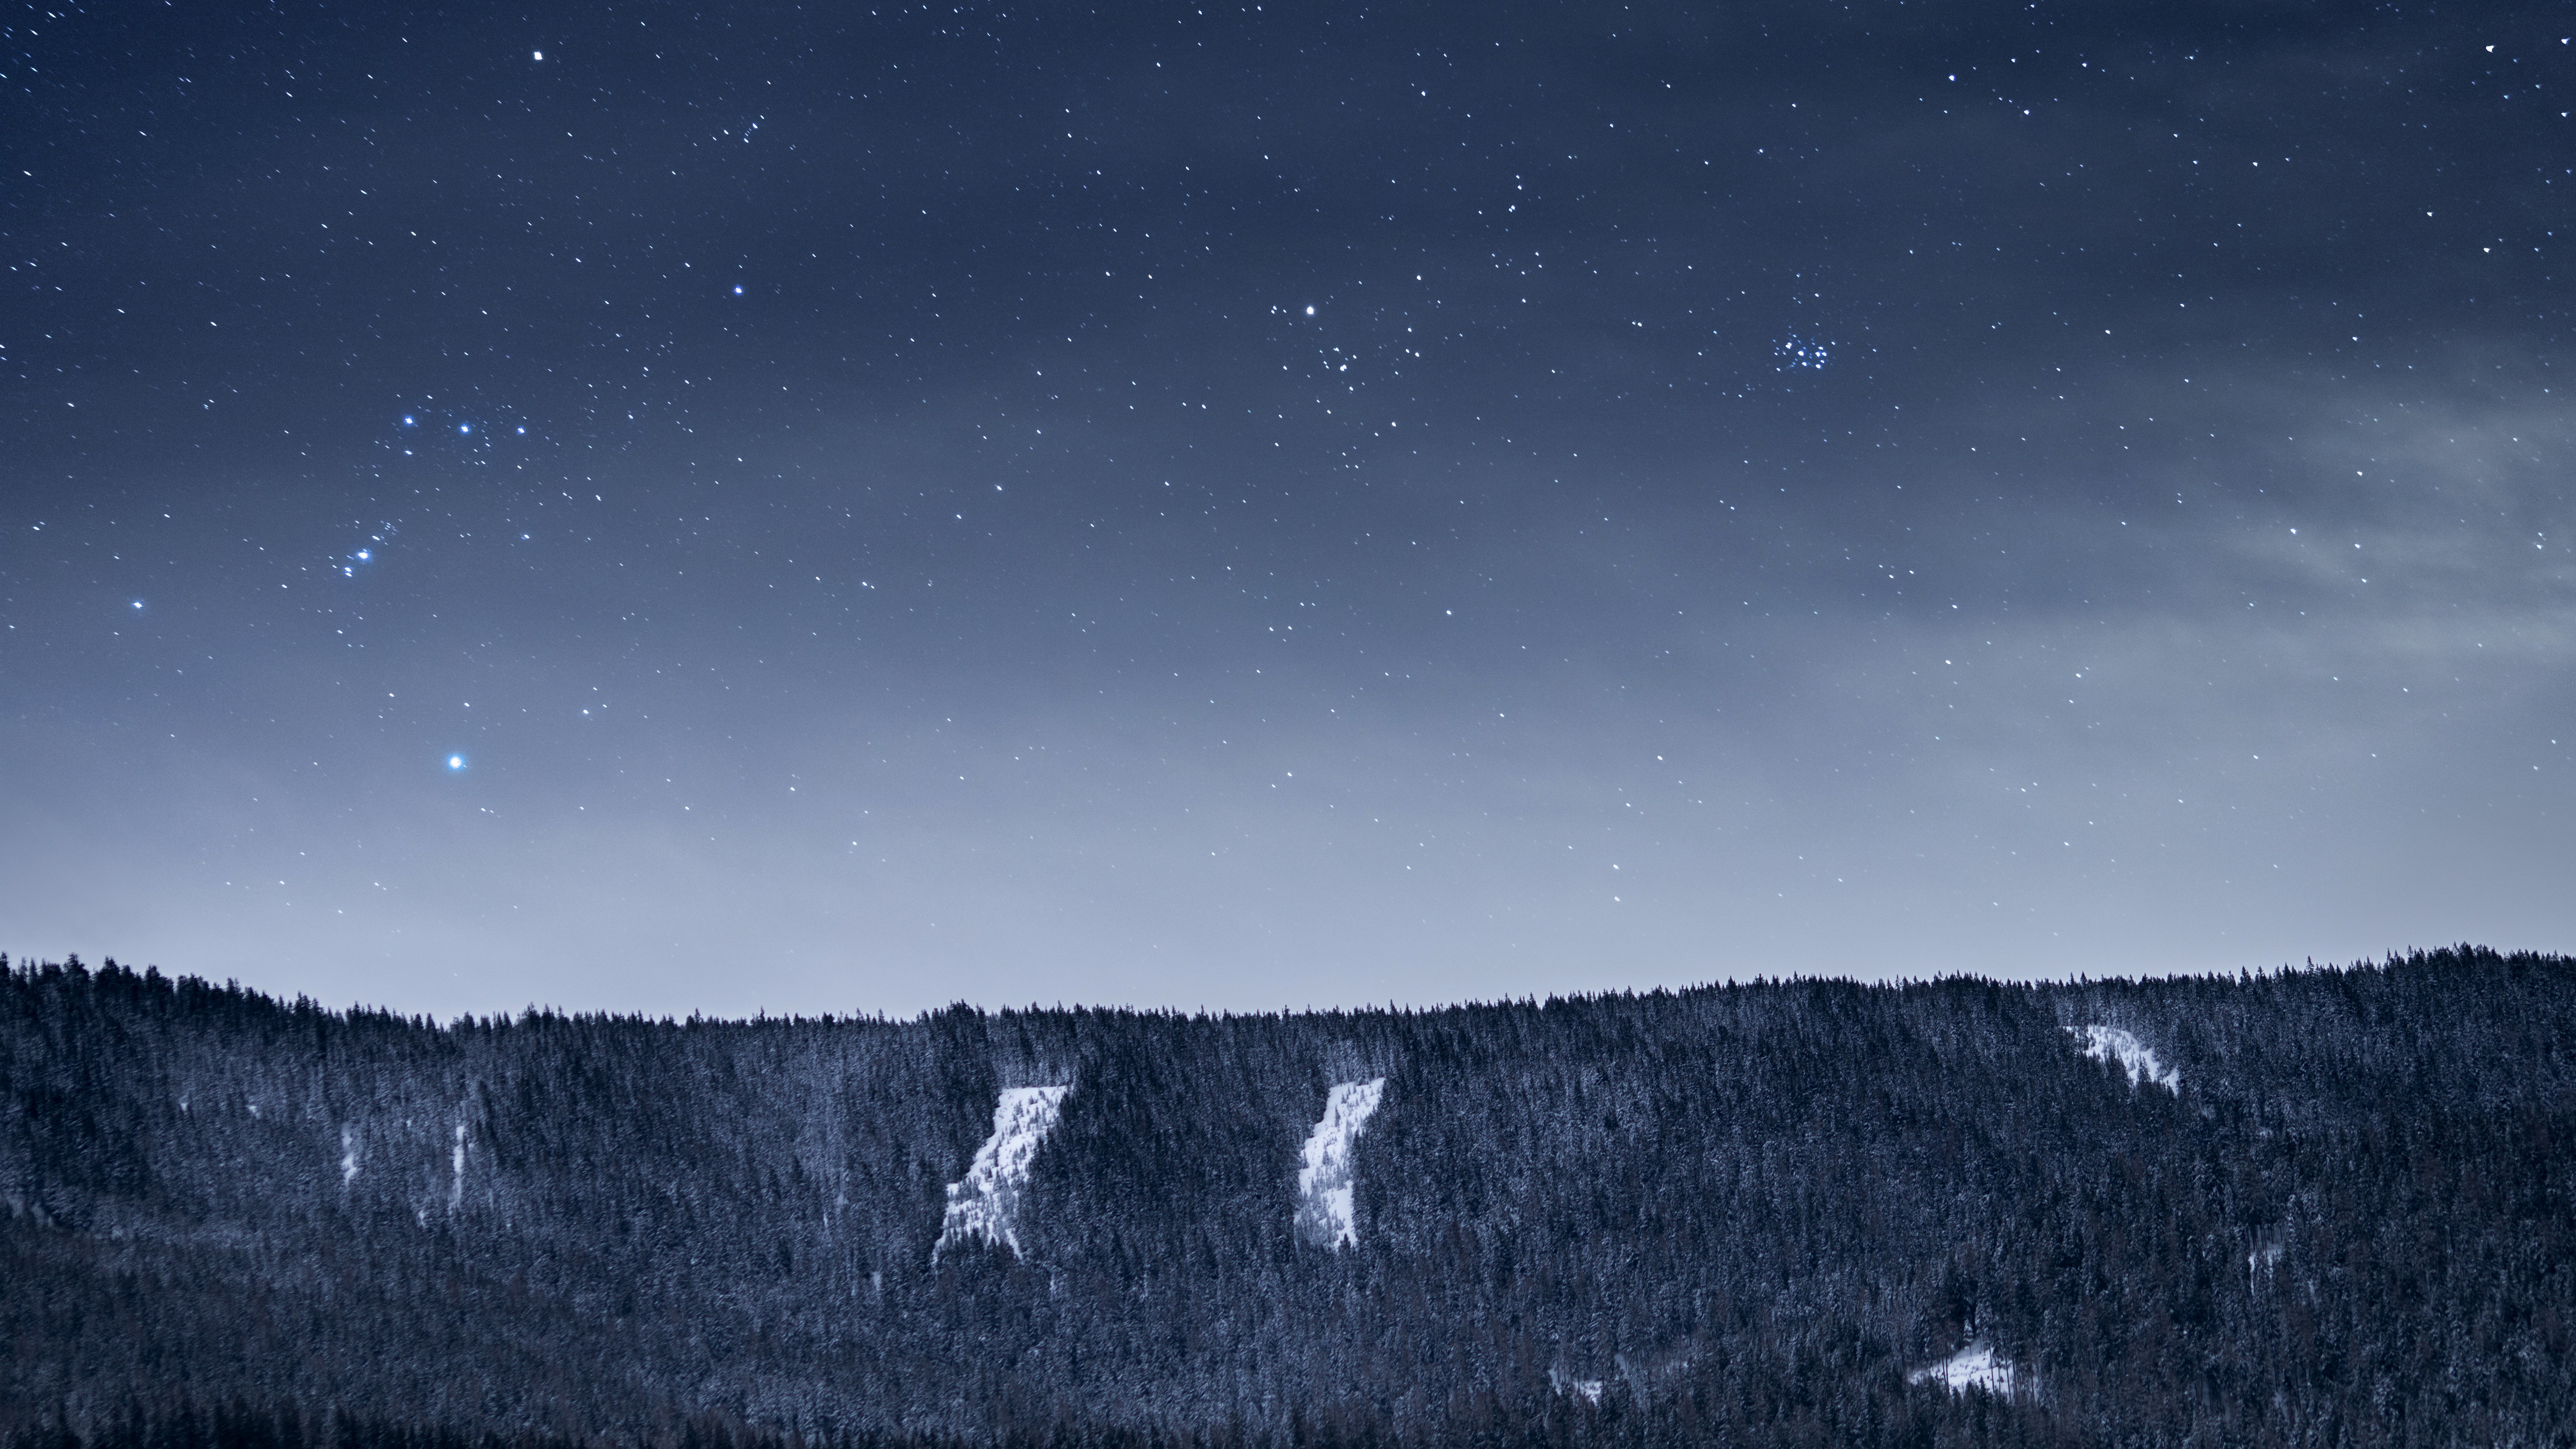 Скачать обои бесплатно Звезды, Ночь, Снег, Лес, Научная Фантастика картинка на рабочий стол ПК